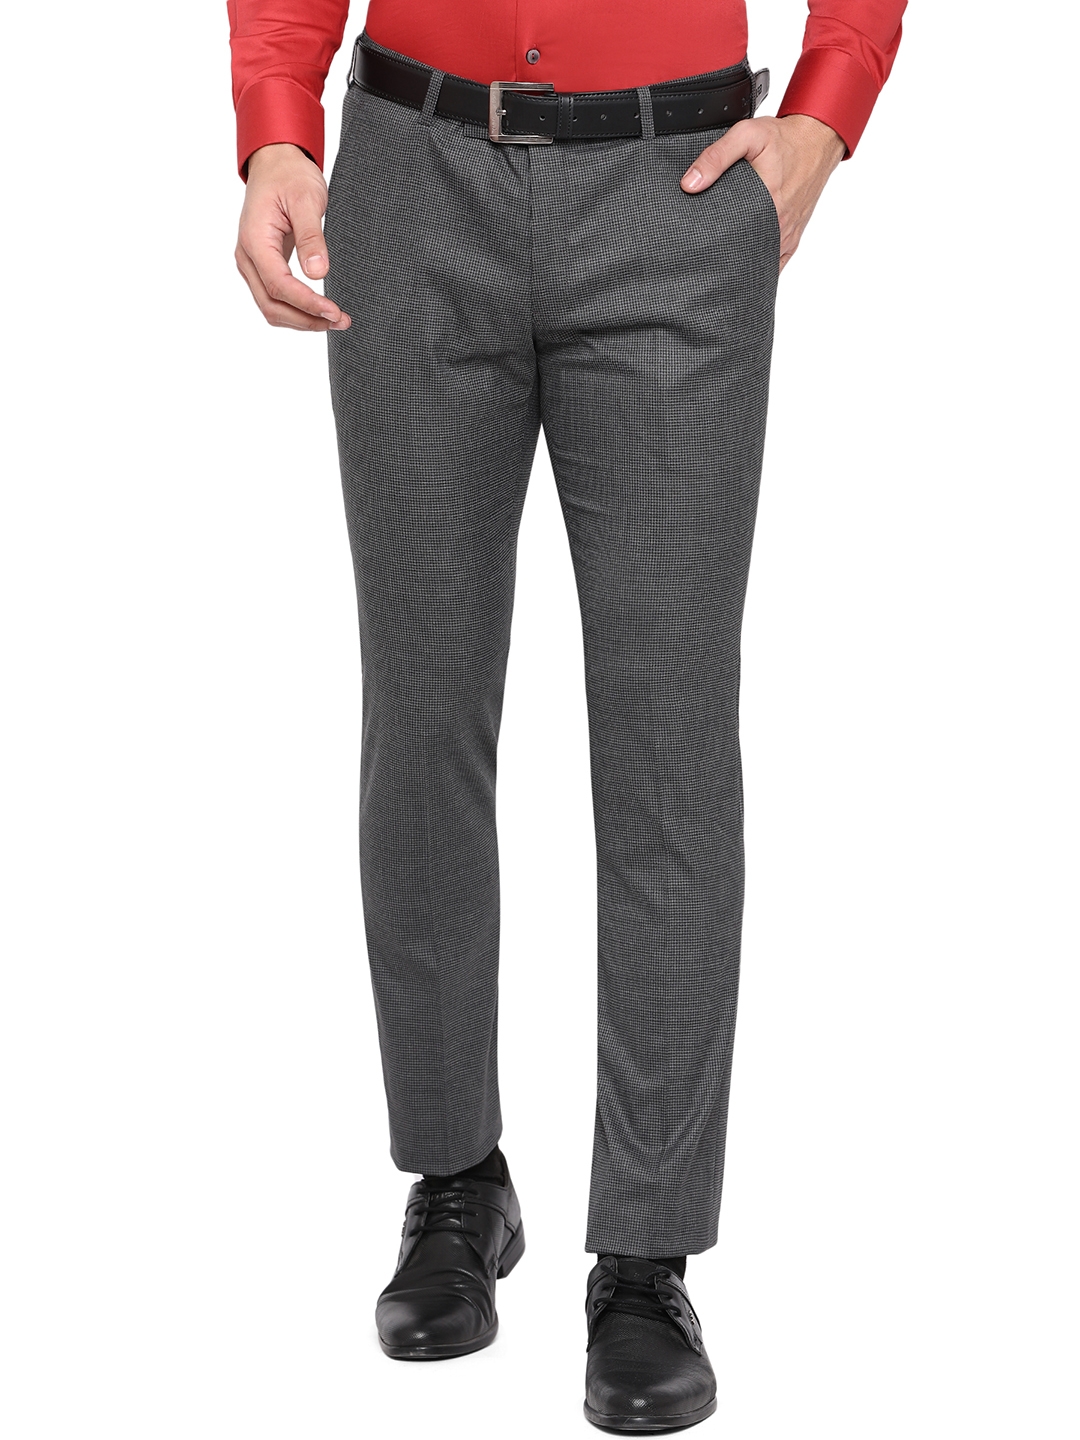 JadeBlue | Grey Solid Formal Trousers (YT46/3,GREY SELF)